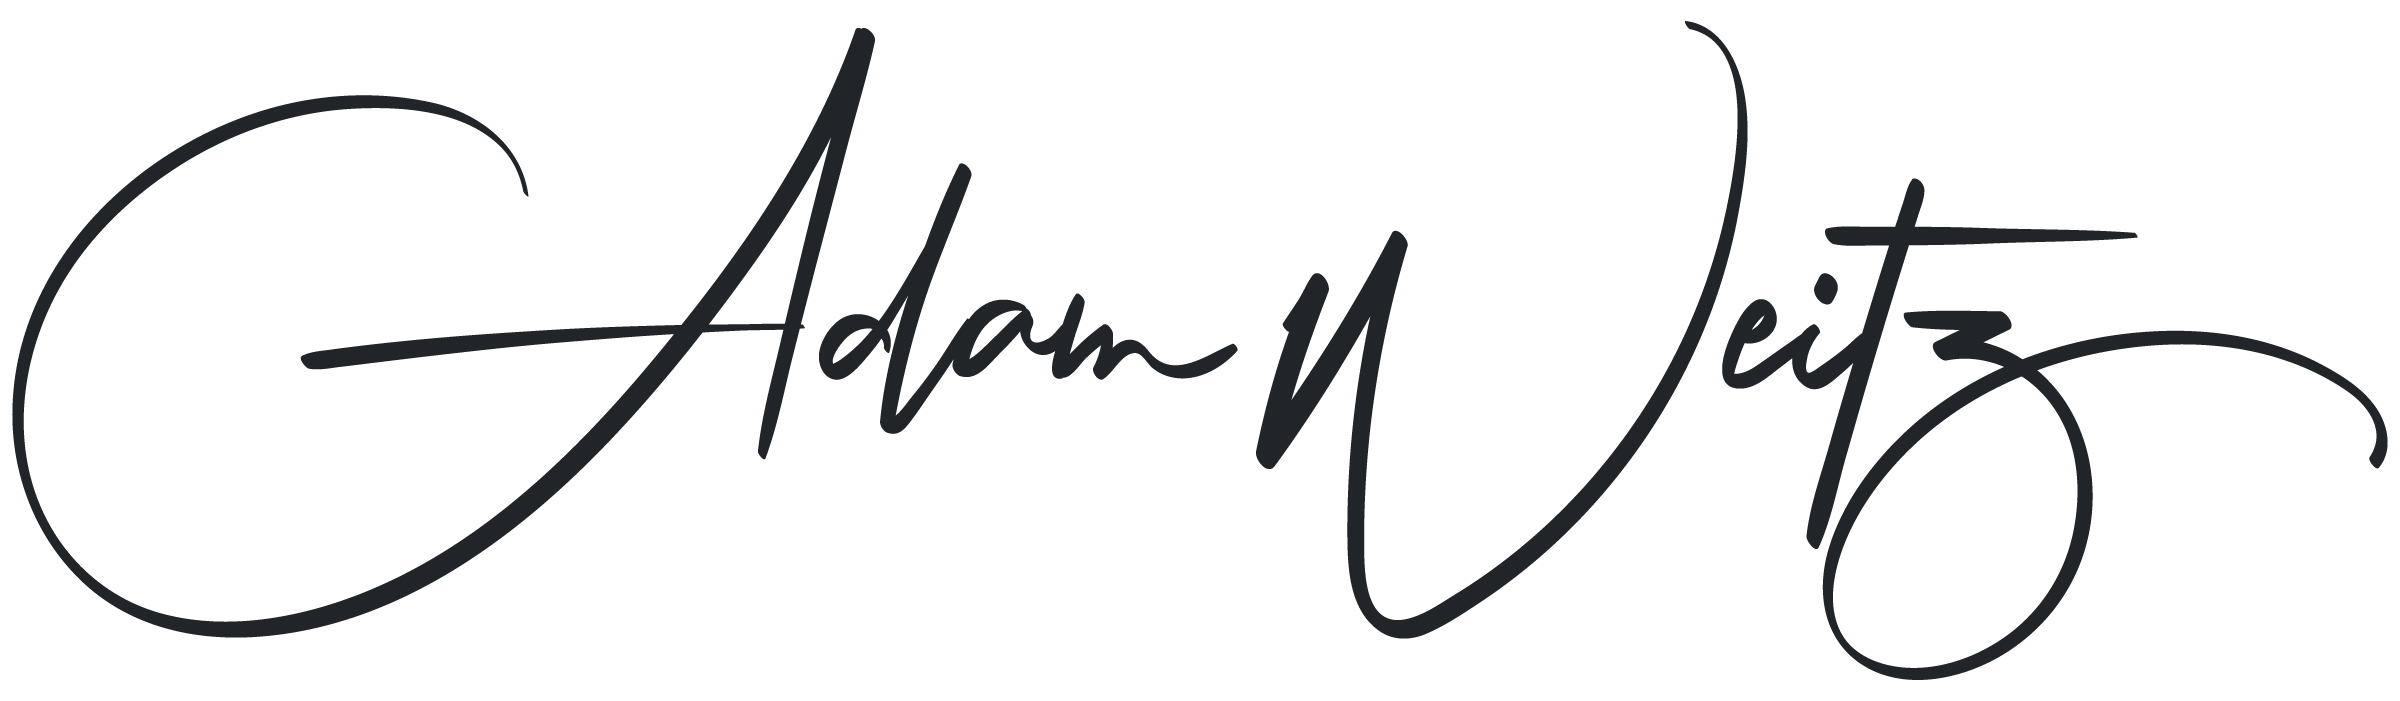 Adam Weitz Signature